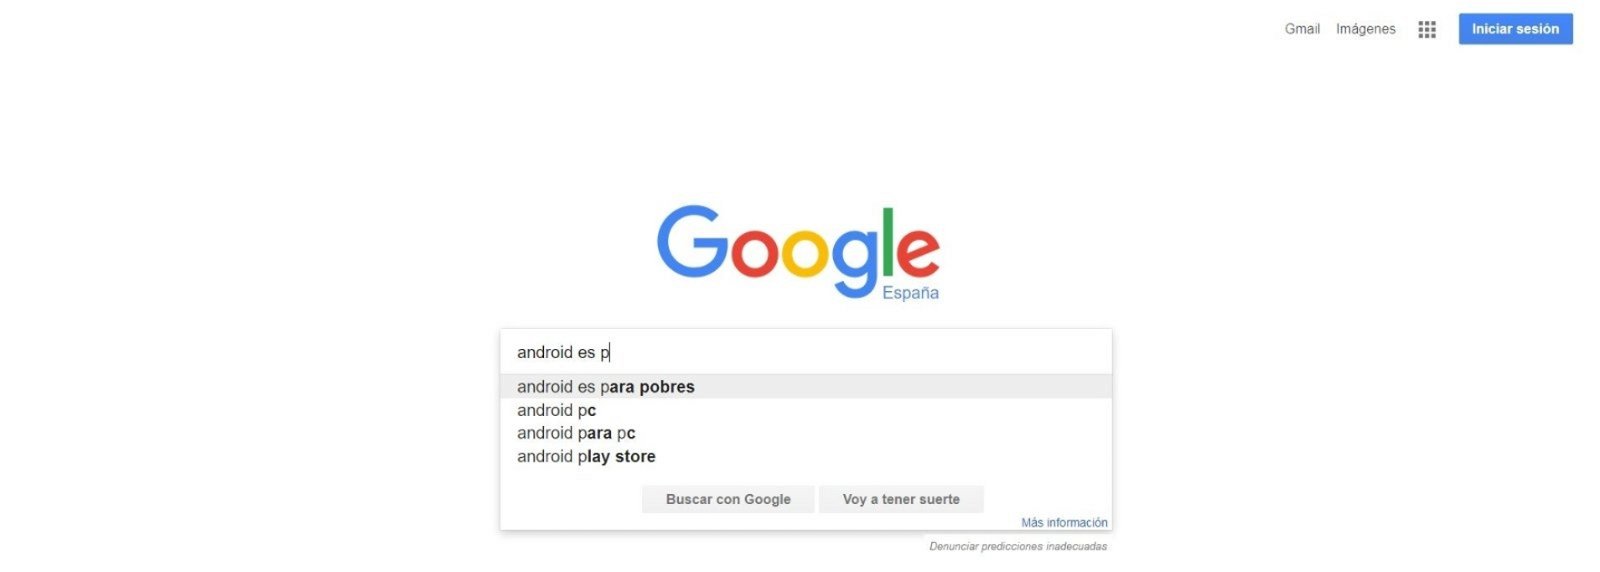 Android es para pobres